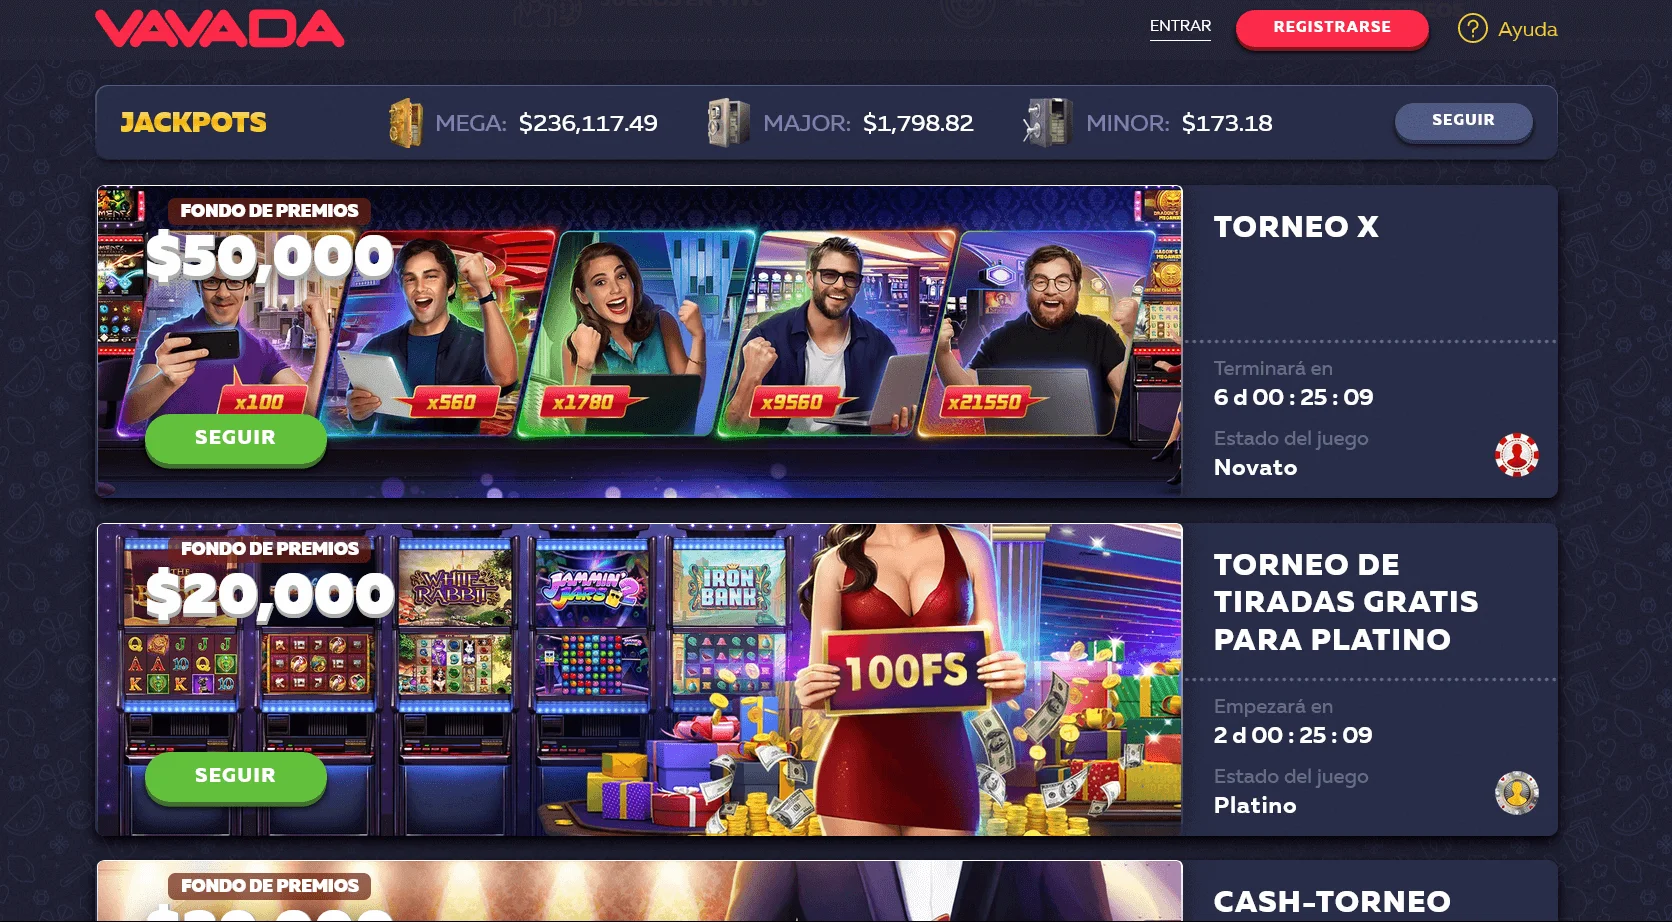 Bono de bienvenida y promociones para jugadores en VAVADA Casino, su tamaño